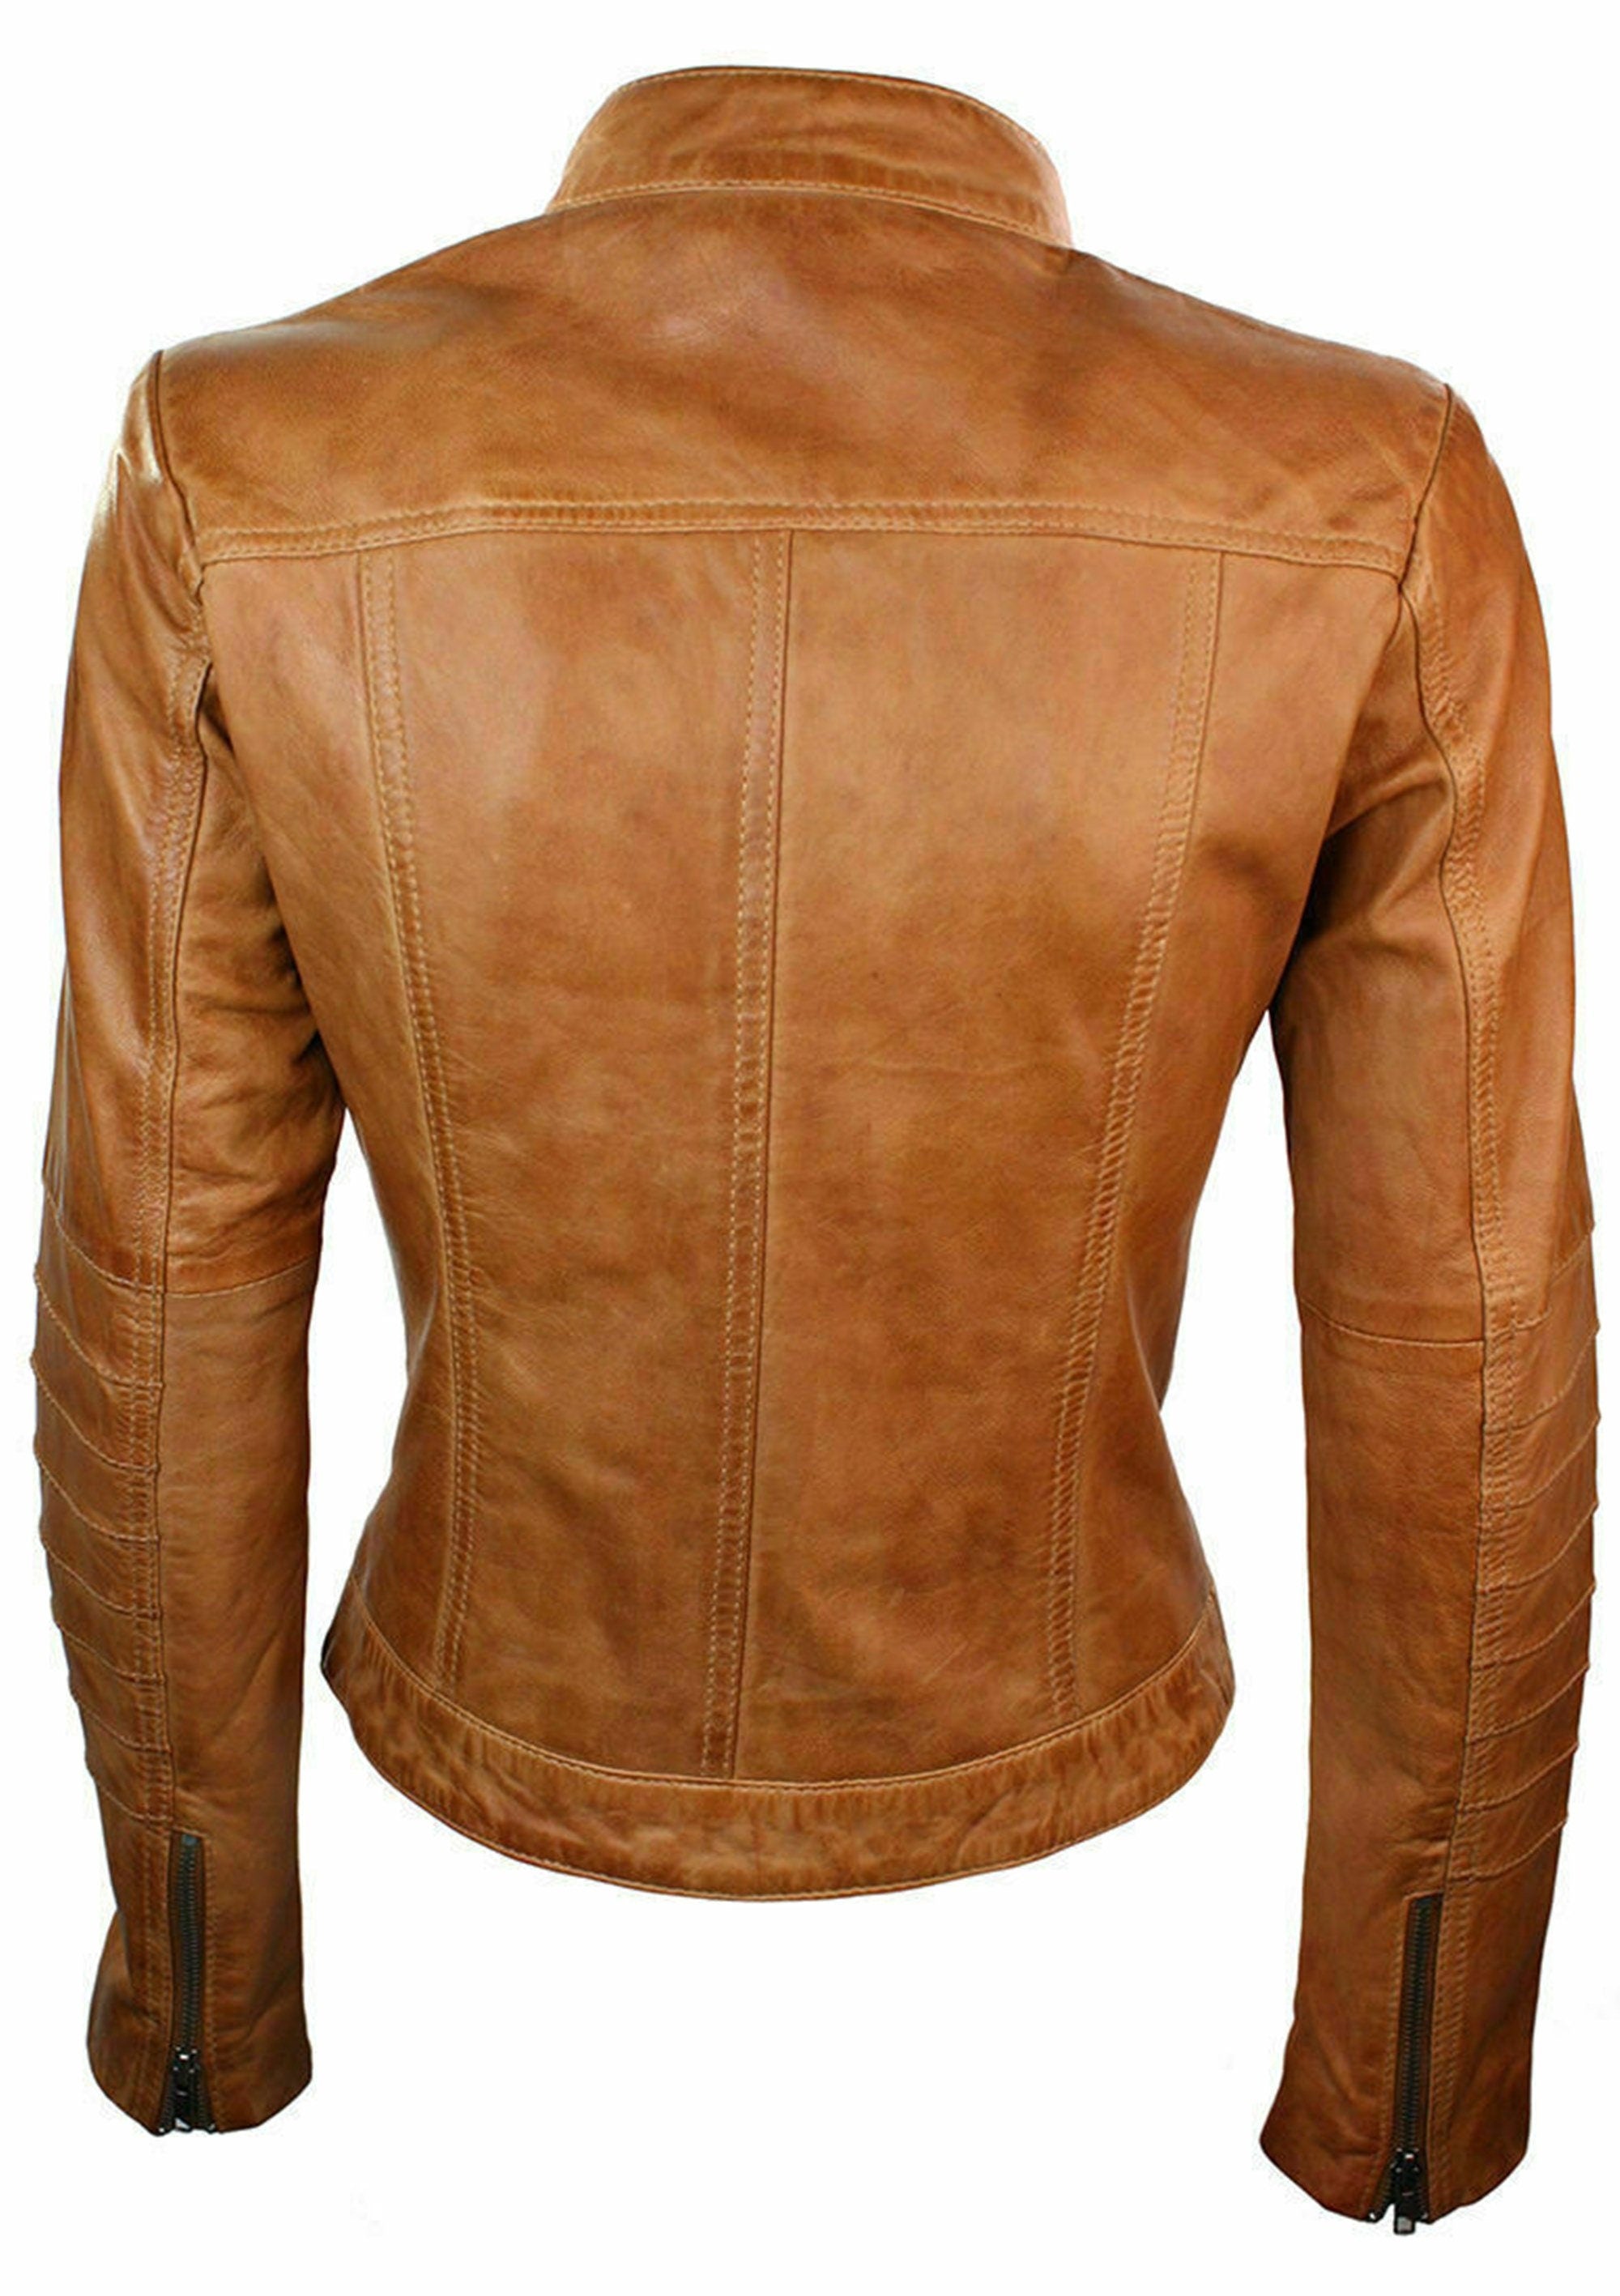 Women Biker Jacket Tan Motorcycle  Leather Jacket